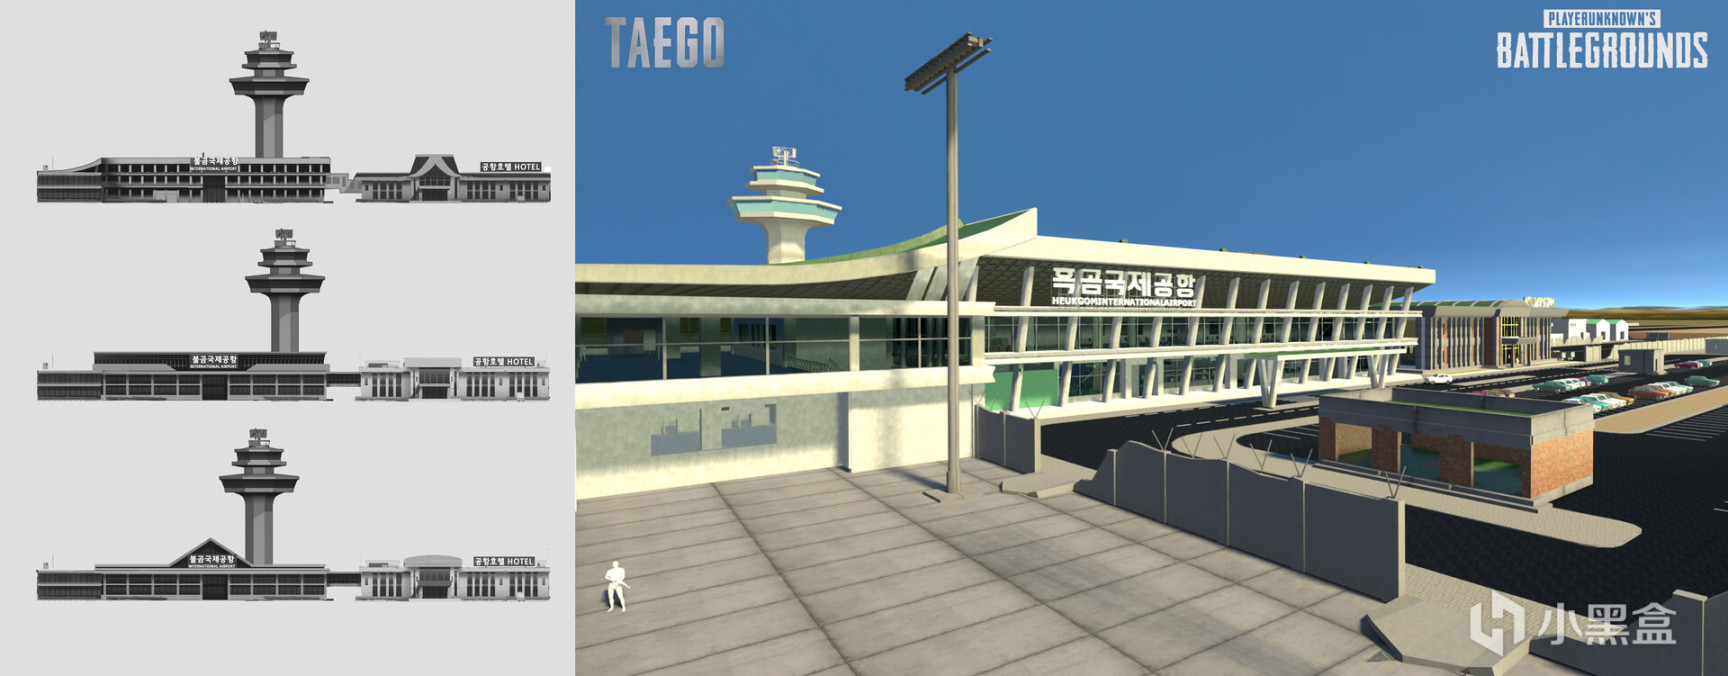 【絕地求生】泰戈建築設計圖公佈：機場廢稿現代感十足-第1張